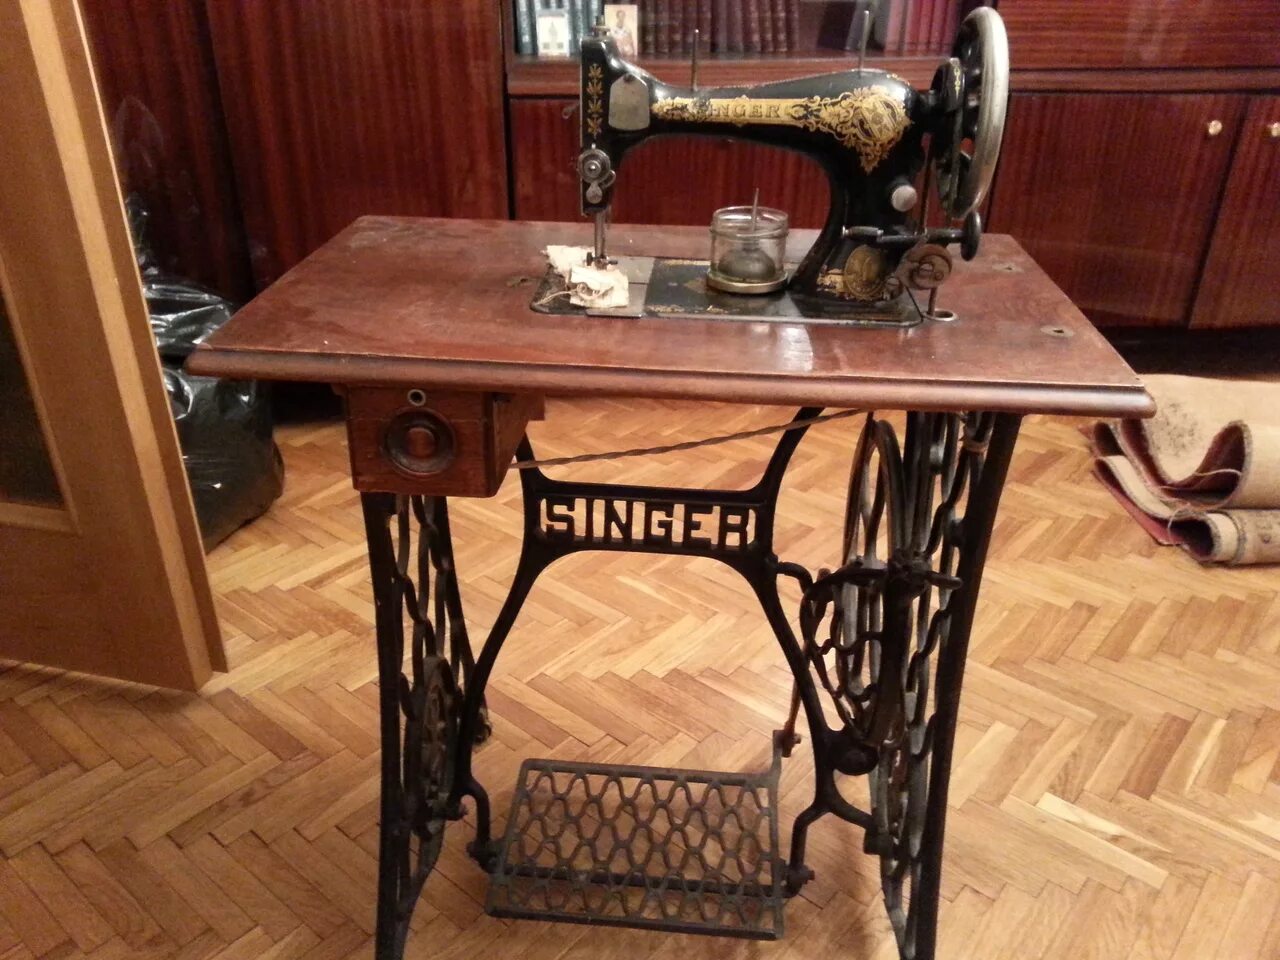 Zinger швейная машинка а3535836. Швейная машинка (Zinger super 2001). Швейная машинка Зингер 1875. Зингер швейная машинка 1908. Швейная машинка зингер в москве